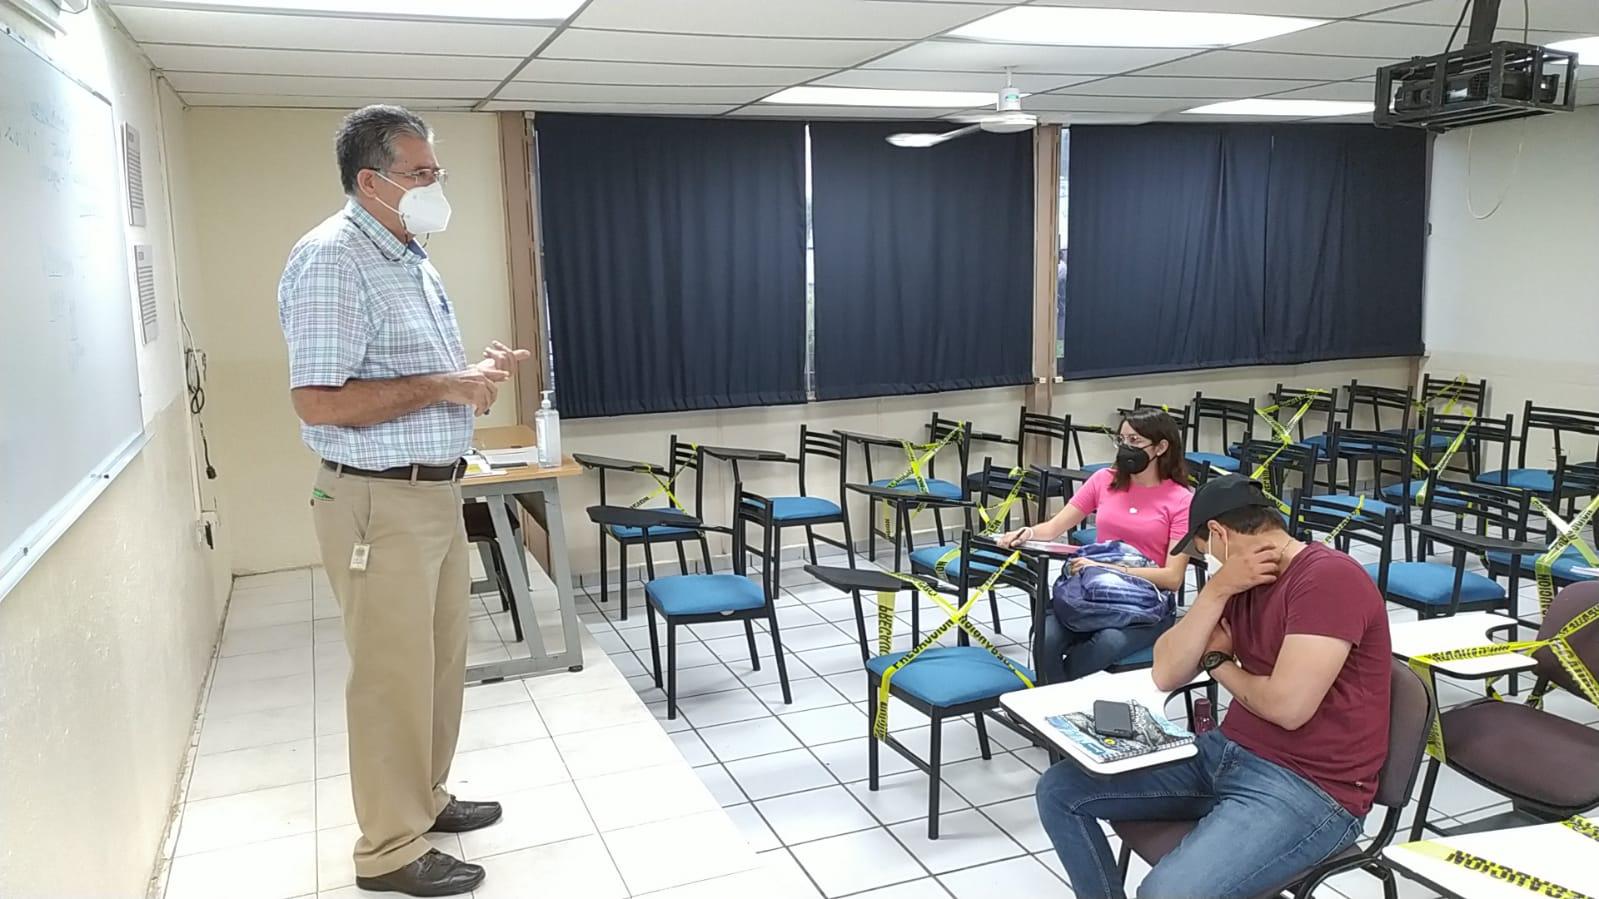 $!Tras un año y 7 meses de ausencia, alumnos de la UAS regresan a clases presenciales en Mazatlán